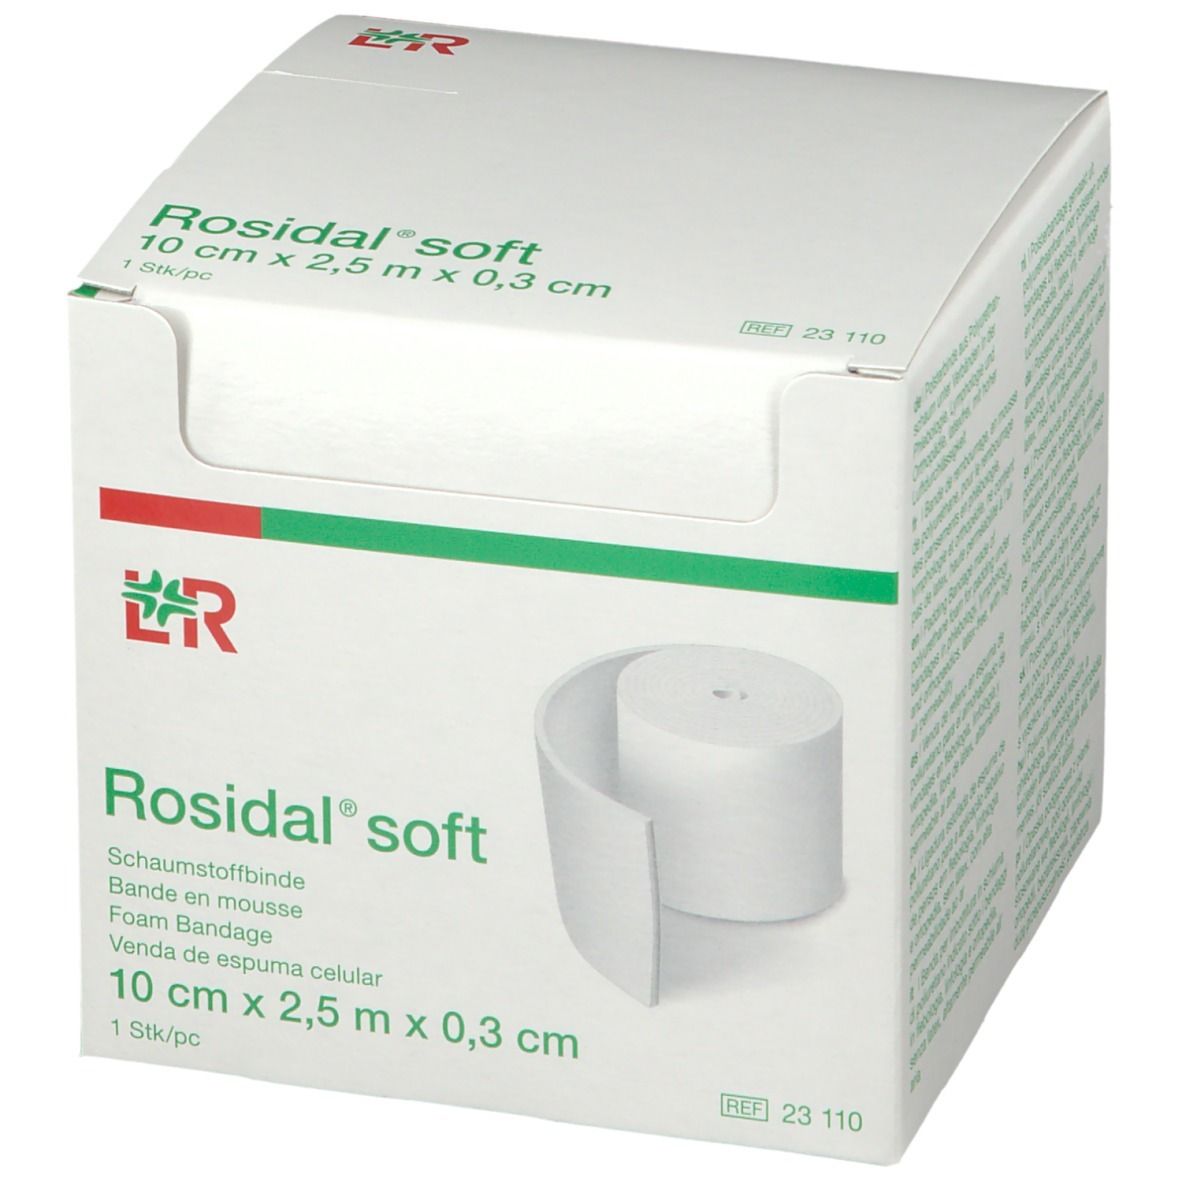 Rosidal® soft 10 cm x 0.3 cm x 2.5 m